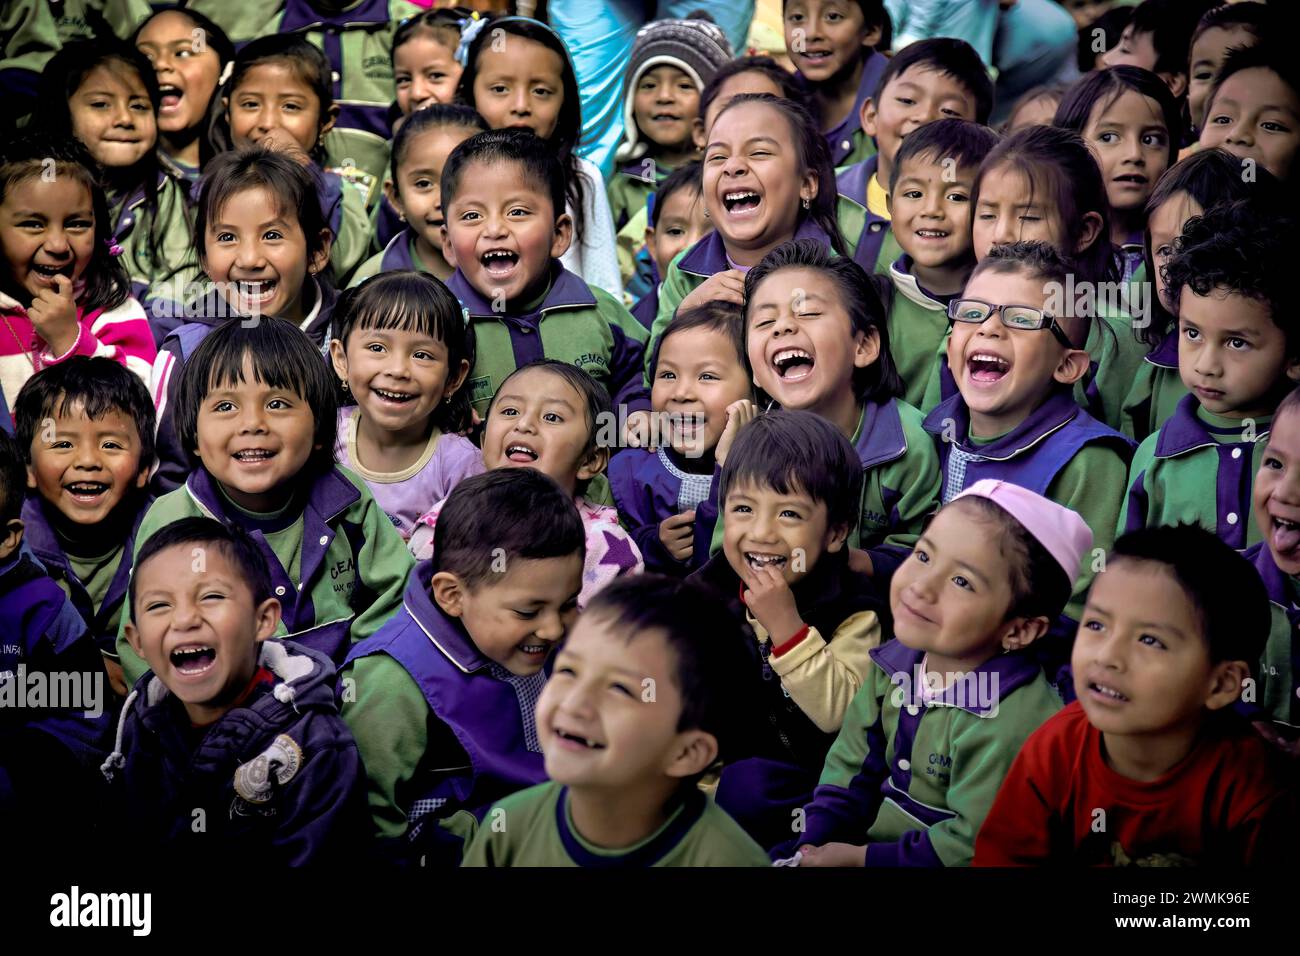 Los hijos de los trabajadores del mercado en una guardería de Quito se echaron a reír con caras alegres mientras veían a un mago, un payaso y bailarines étnicos. Foto de stock